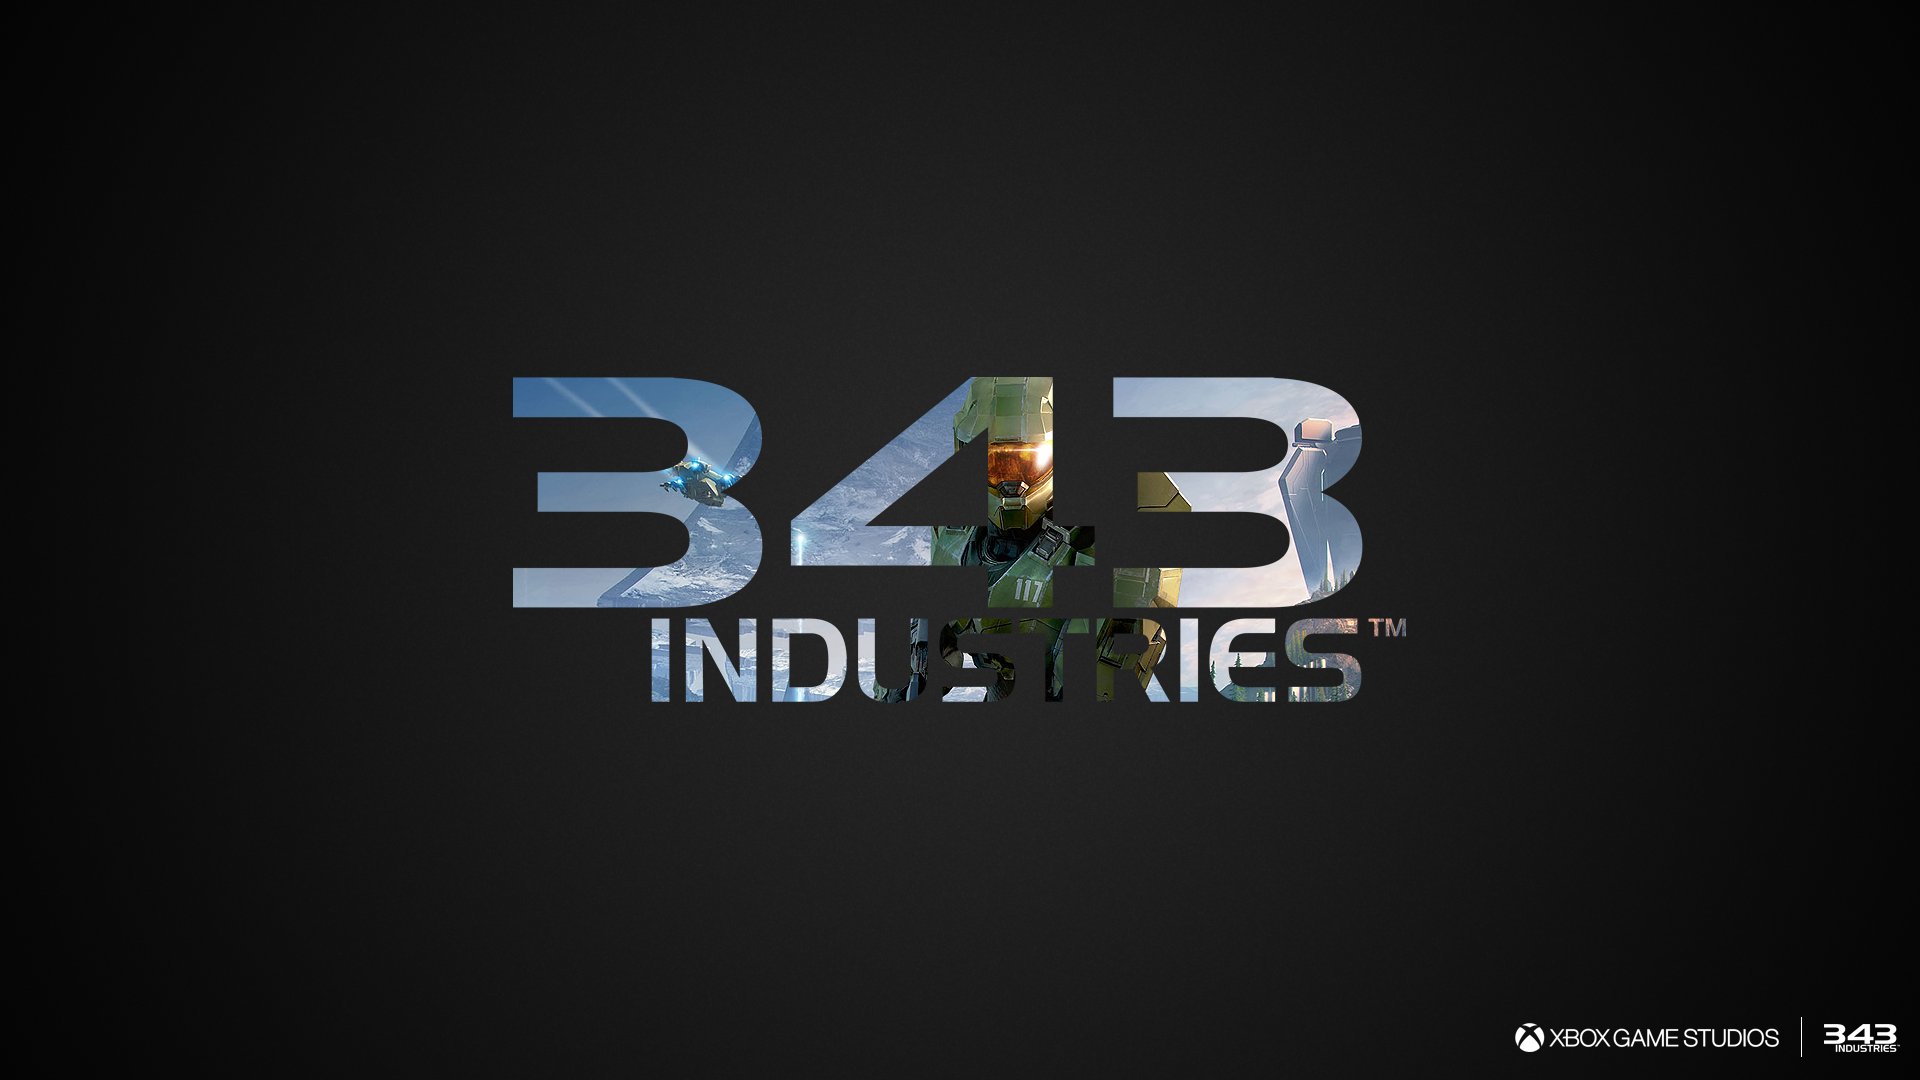 343 Industreis wird weiterhin Halo entwickeln und die Unreal Engine in zukünftigen Projekten verwenden